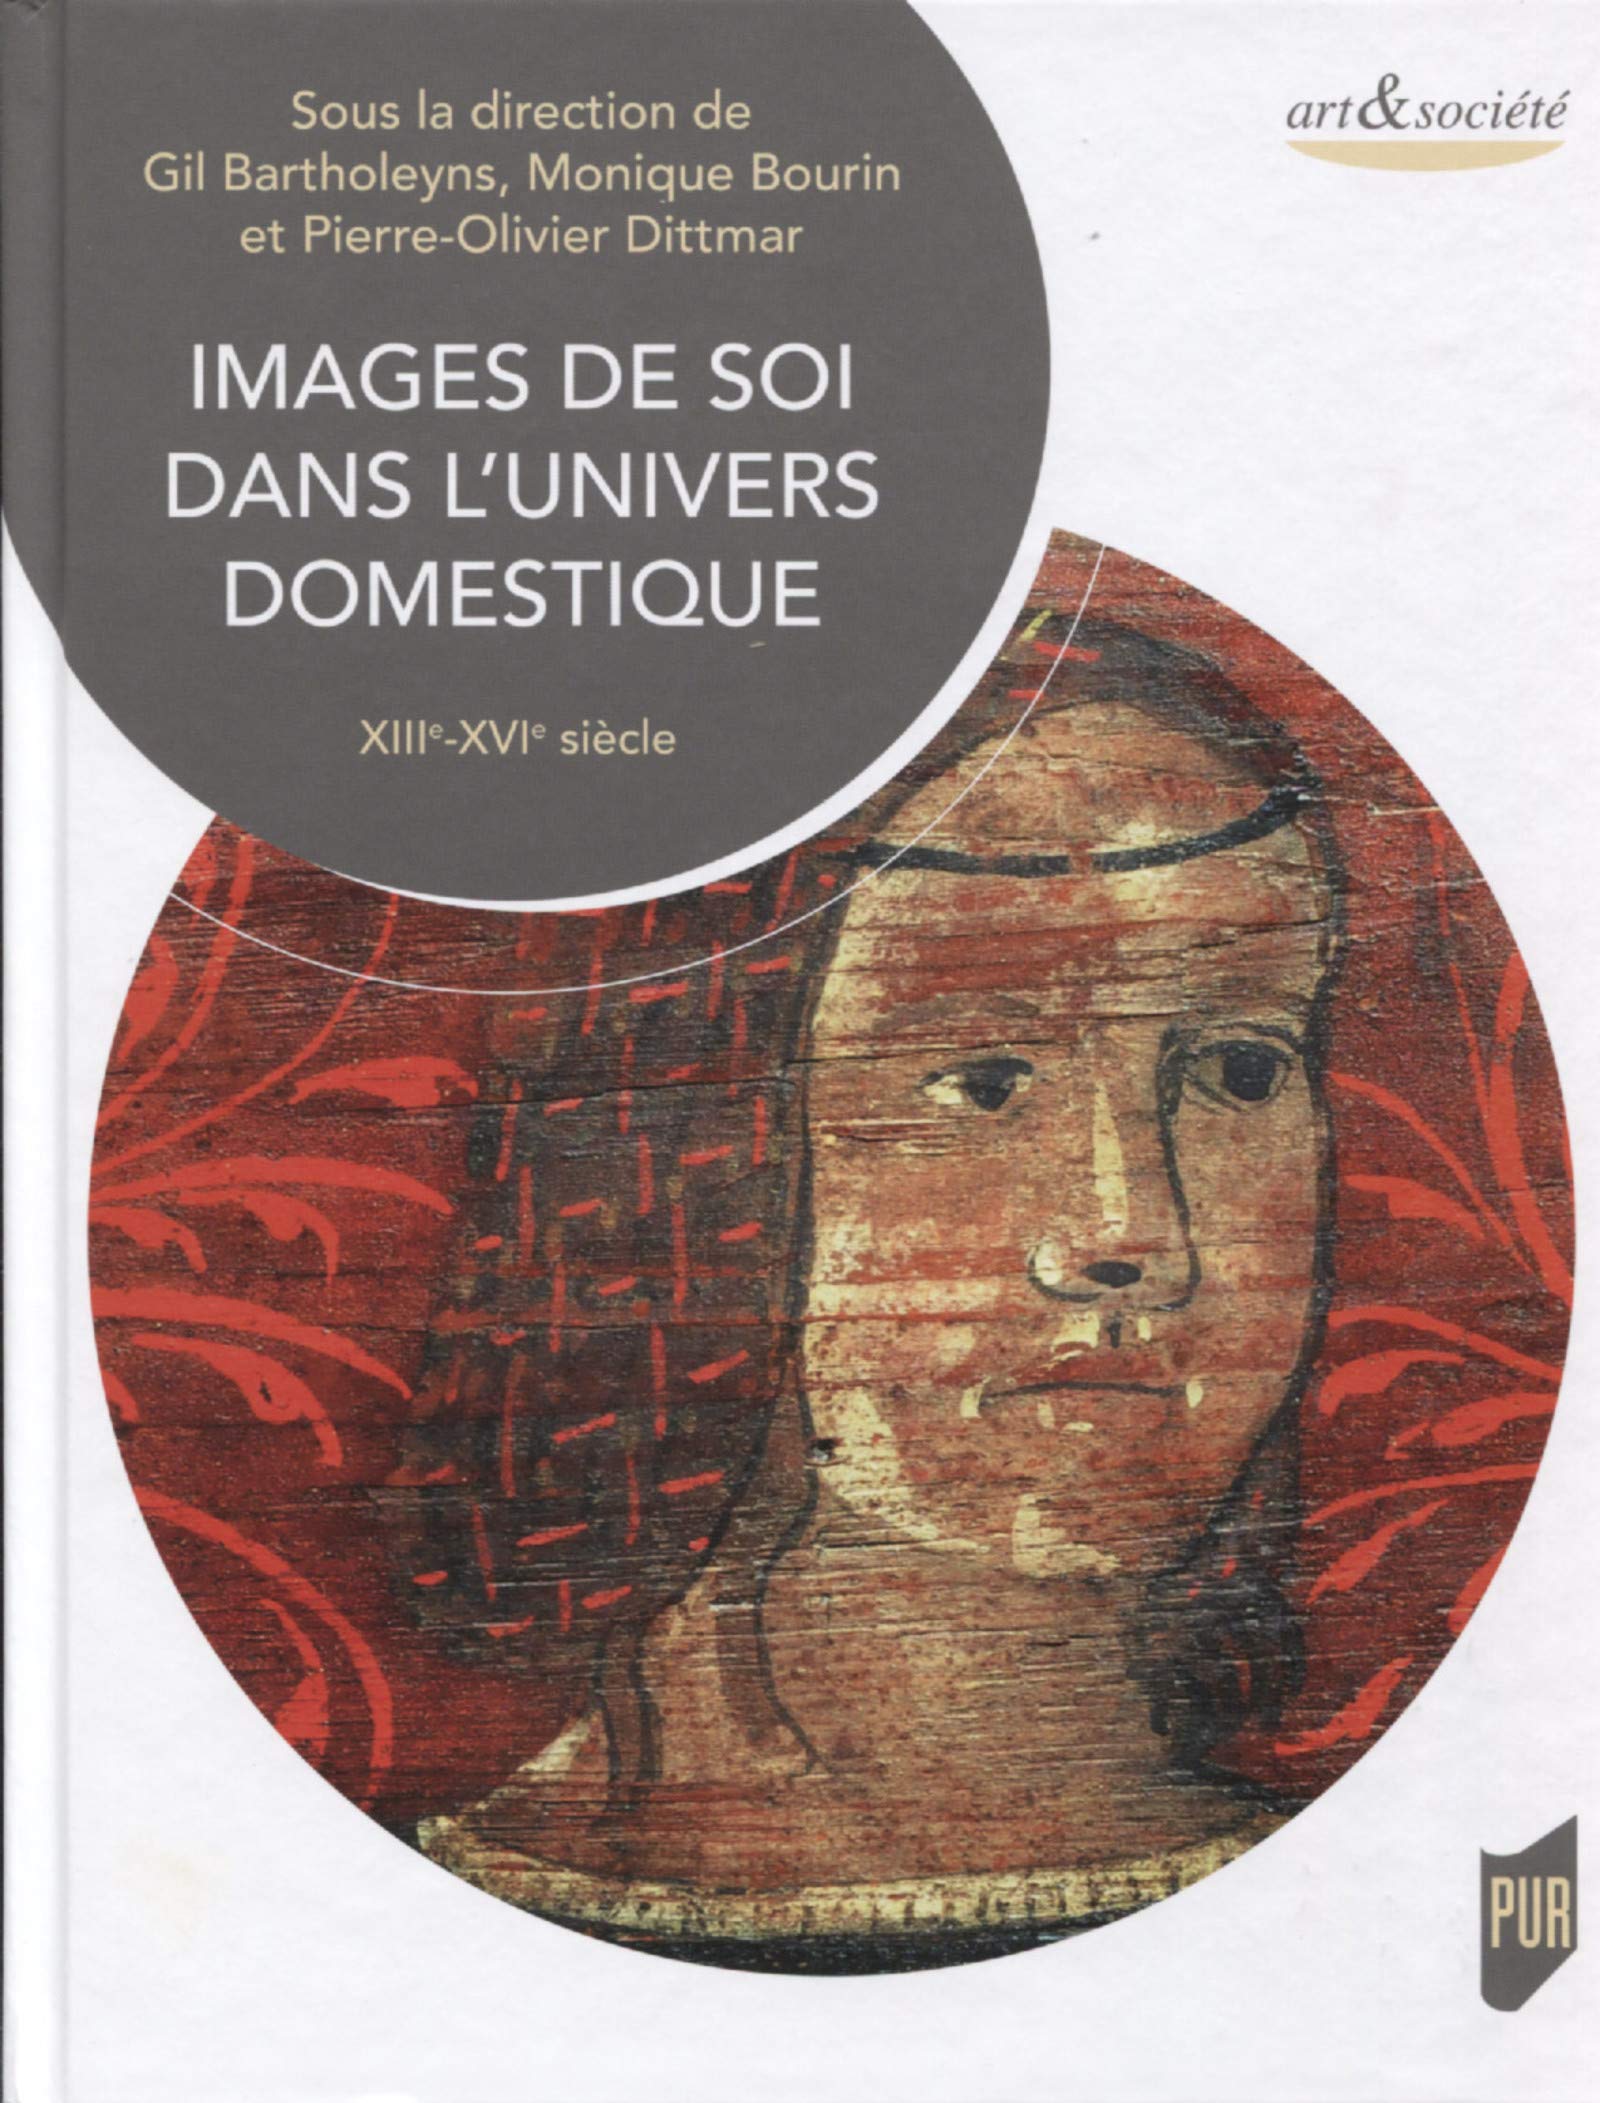 Images de soi dans l'univers domestique, XIIIe-XVIe siècle, 2018, 245 p.